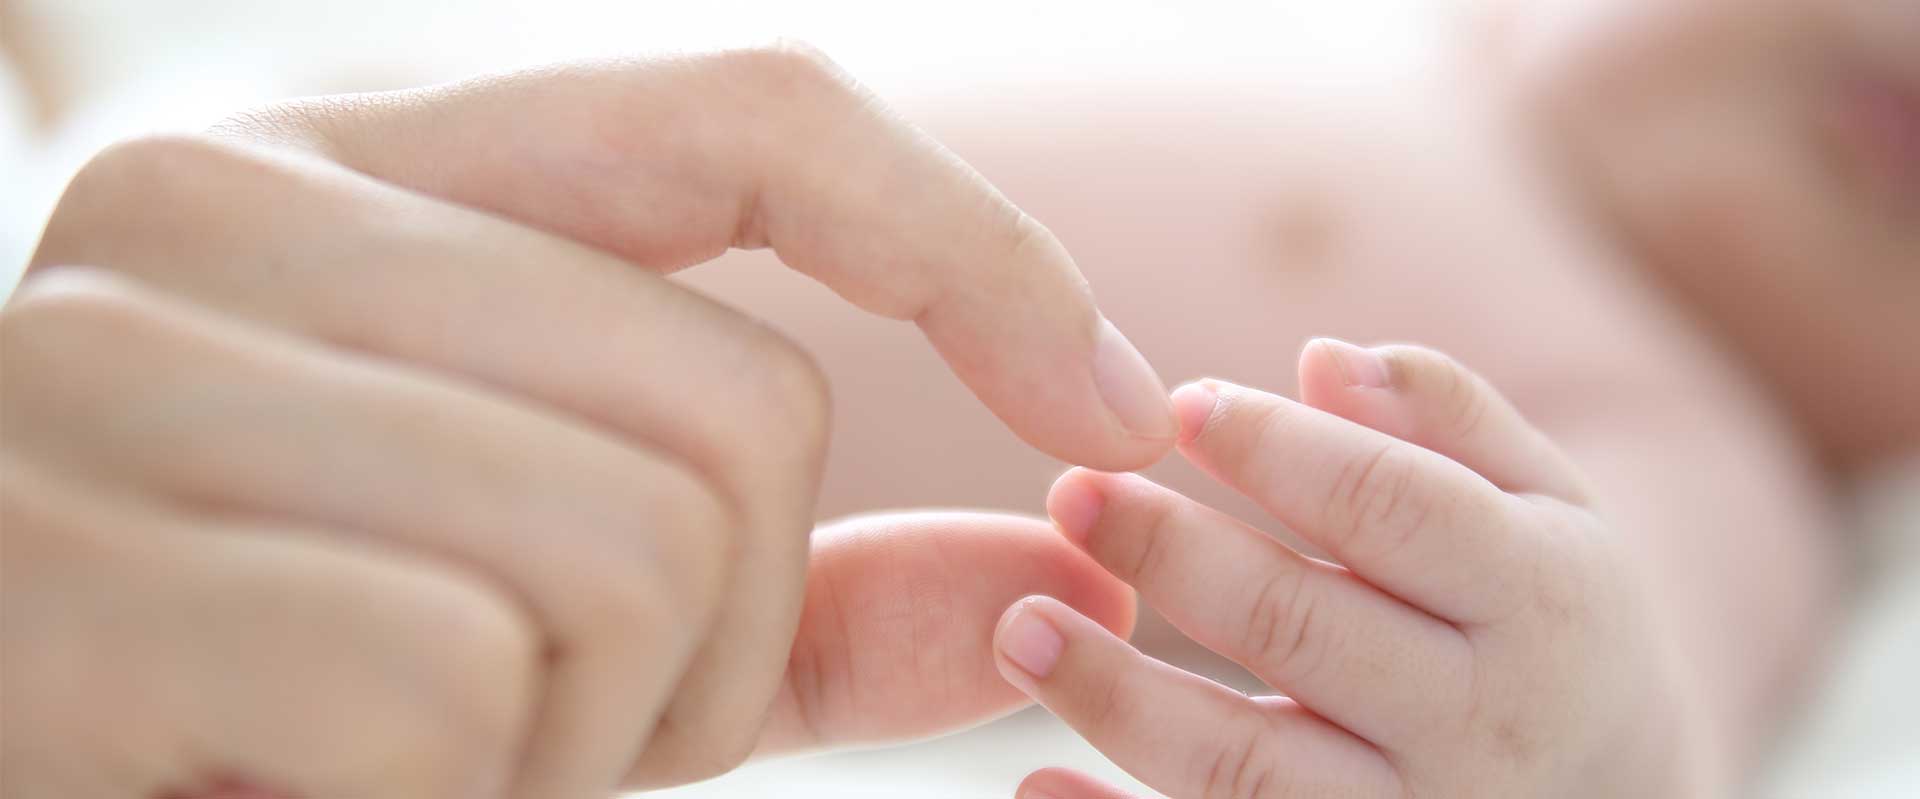 woman's hand touching baby's hand